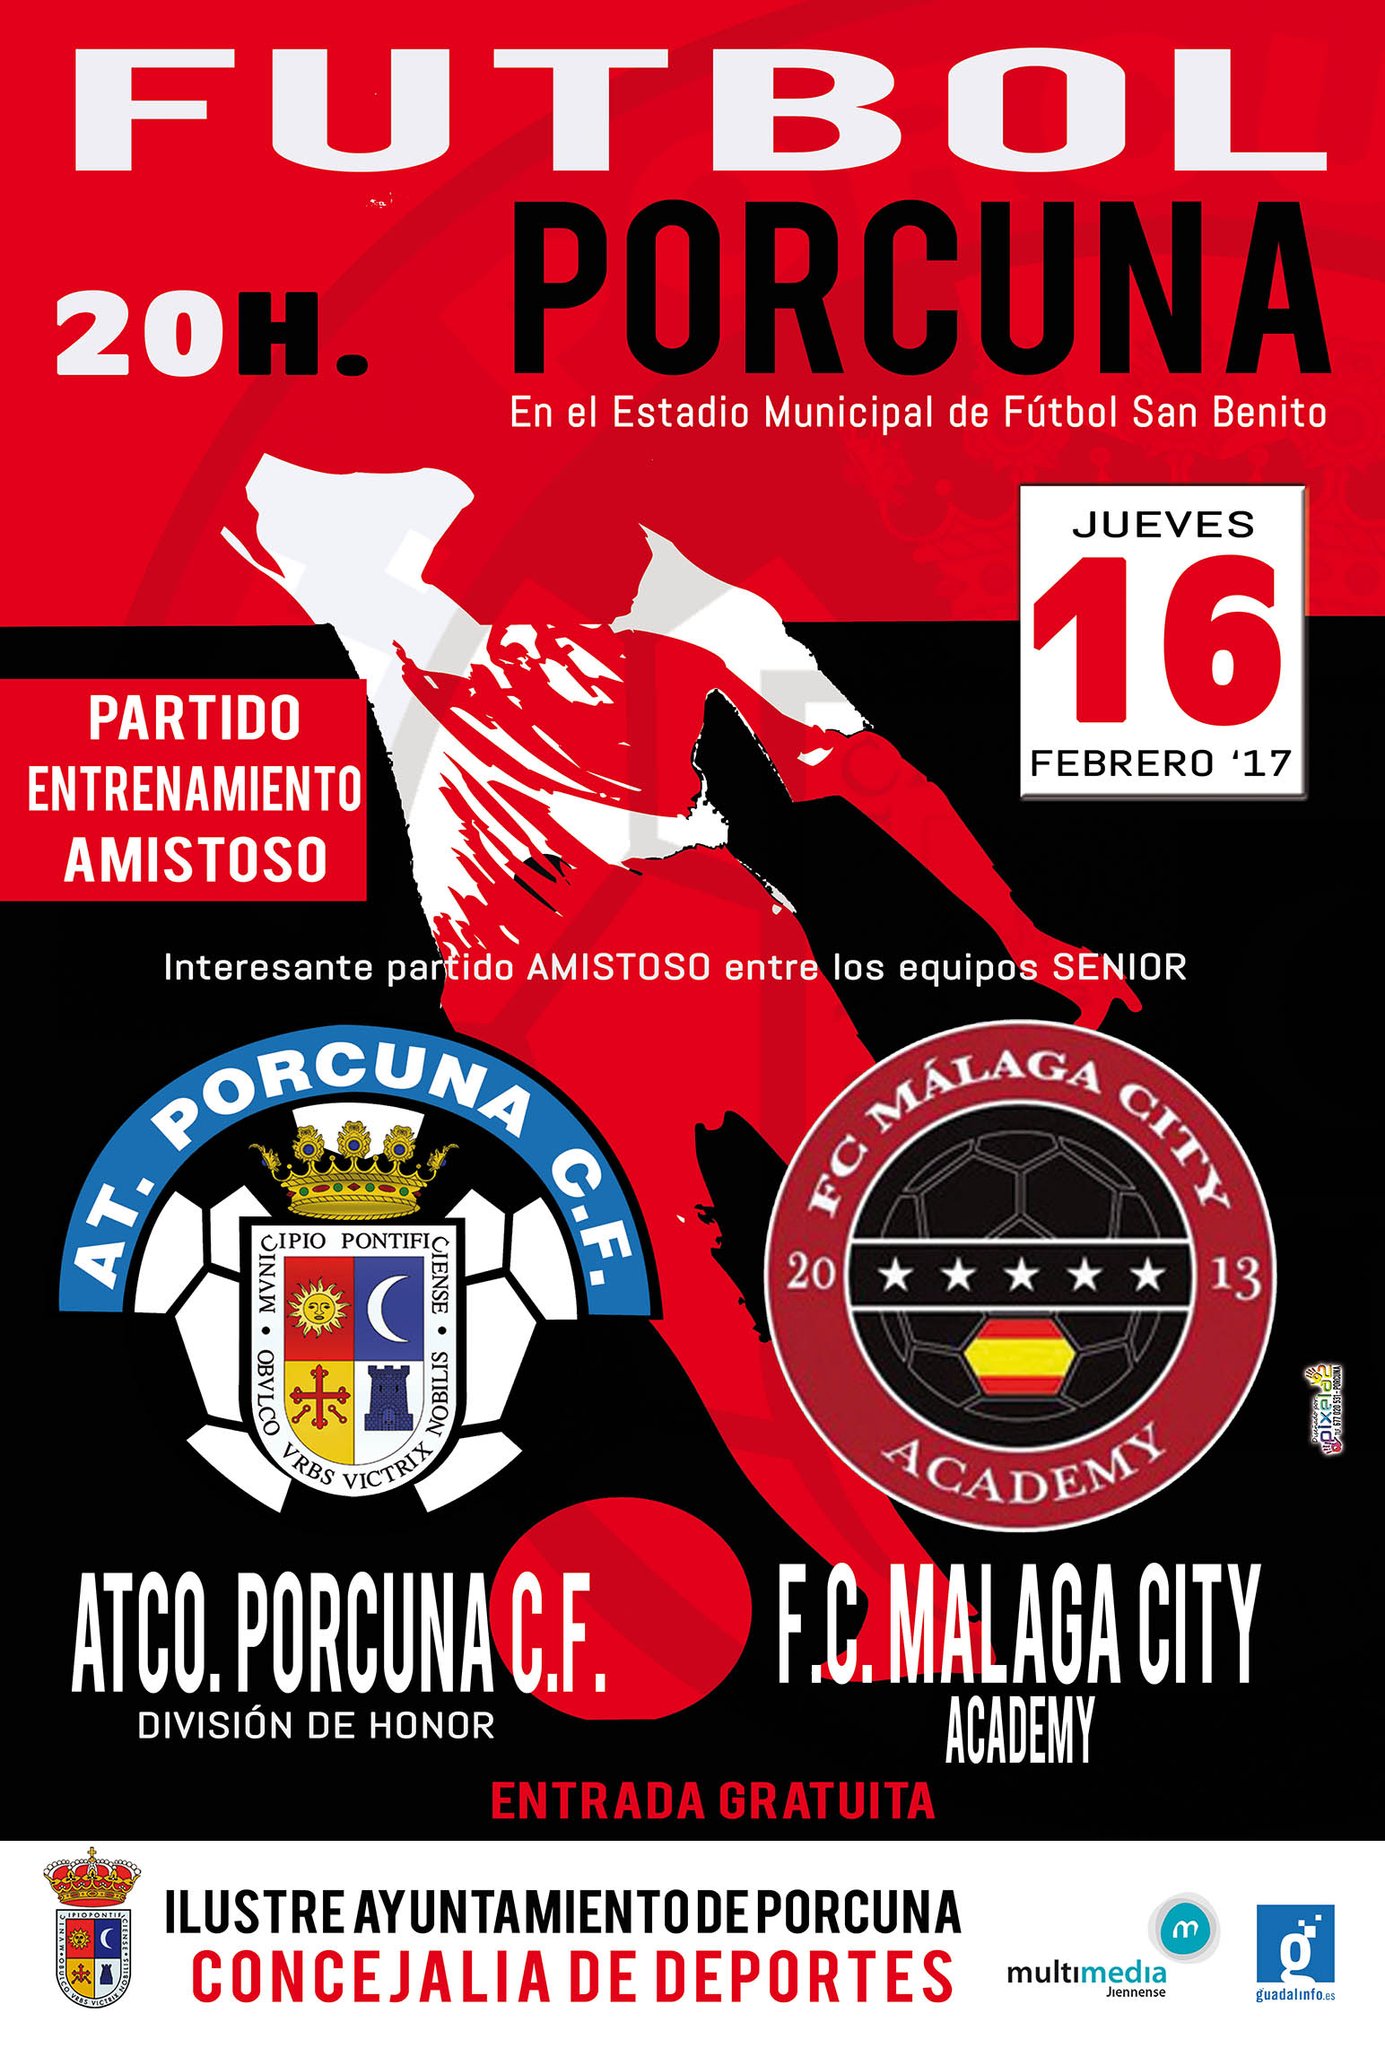 FÚTBOL: Atco. Porcuna - FC. Málaga City Academy